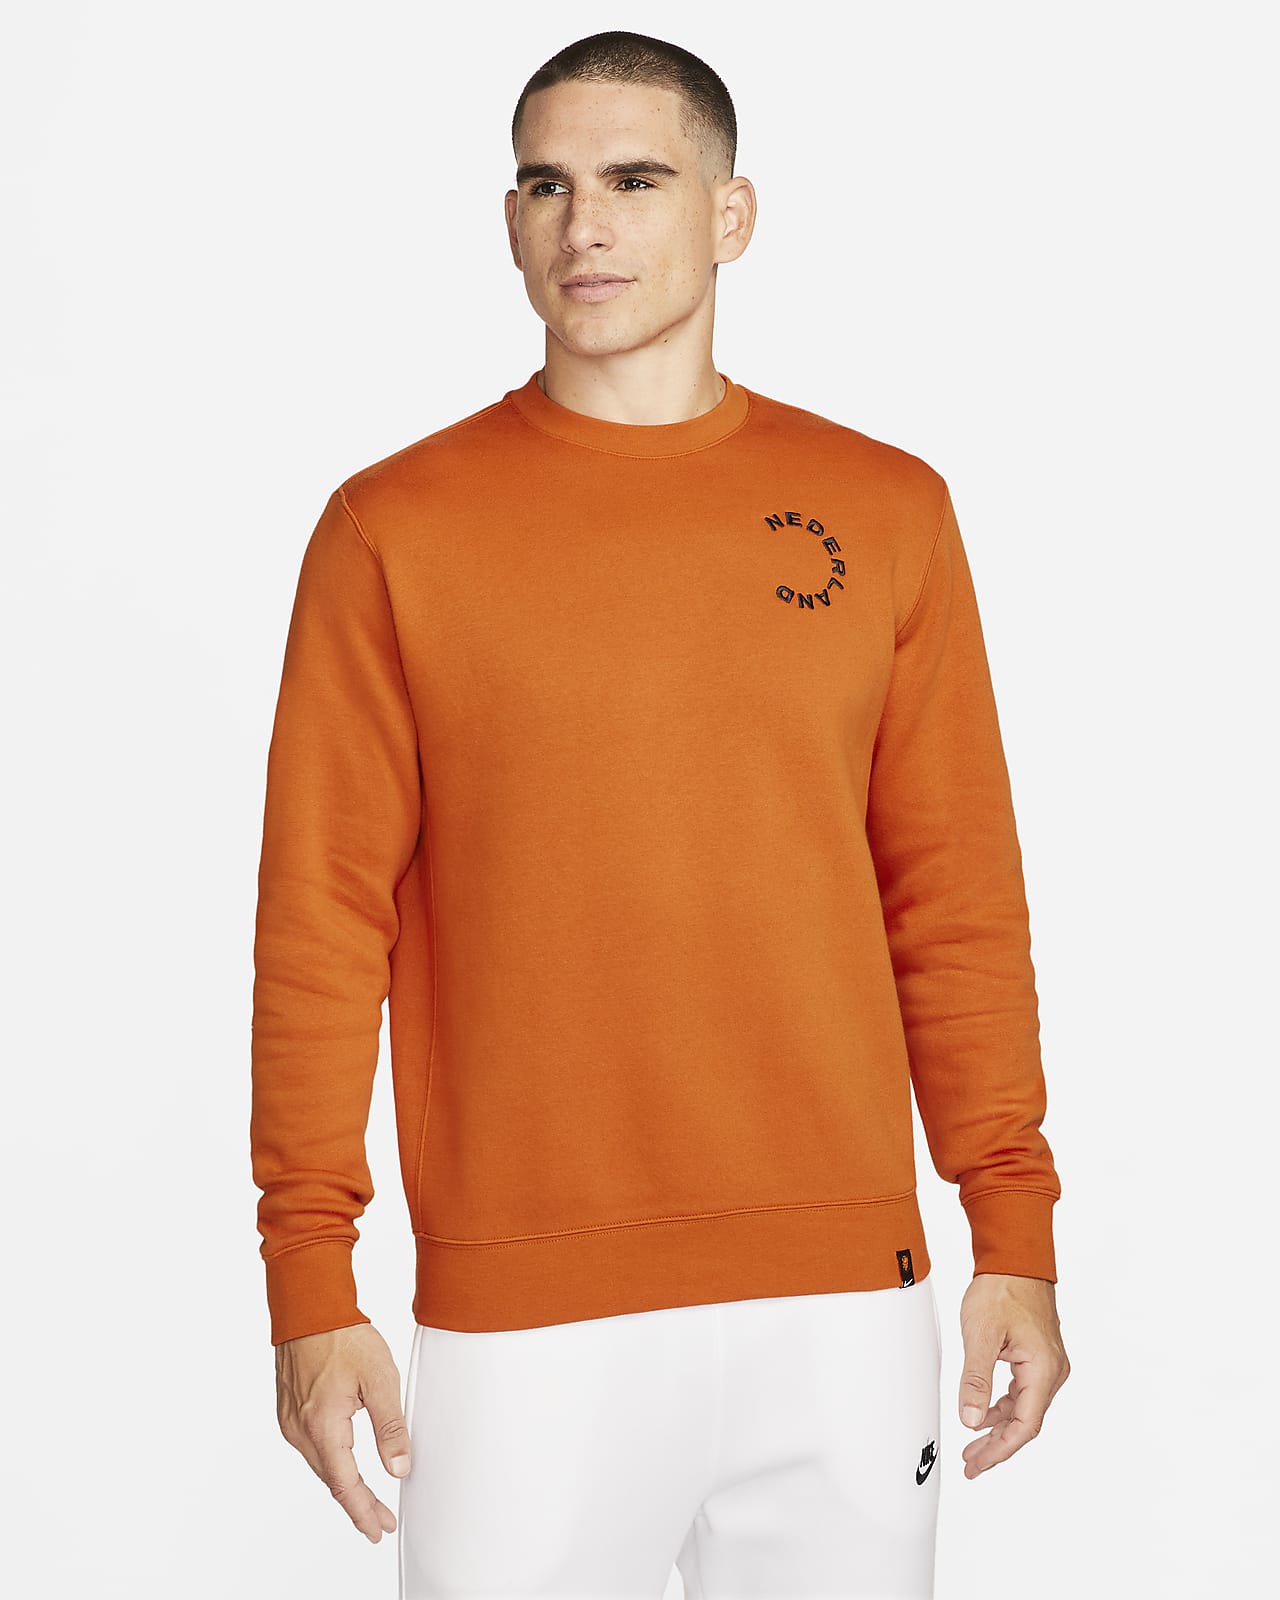 Netherlands Club Fleece Men's Crew-Neck Sweatshirt